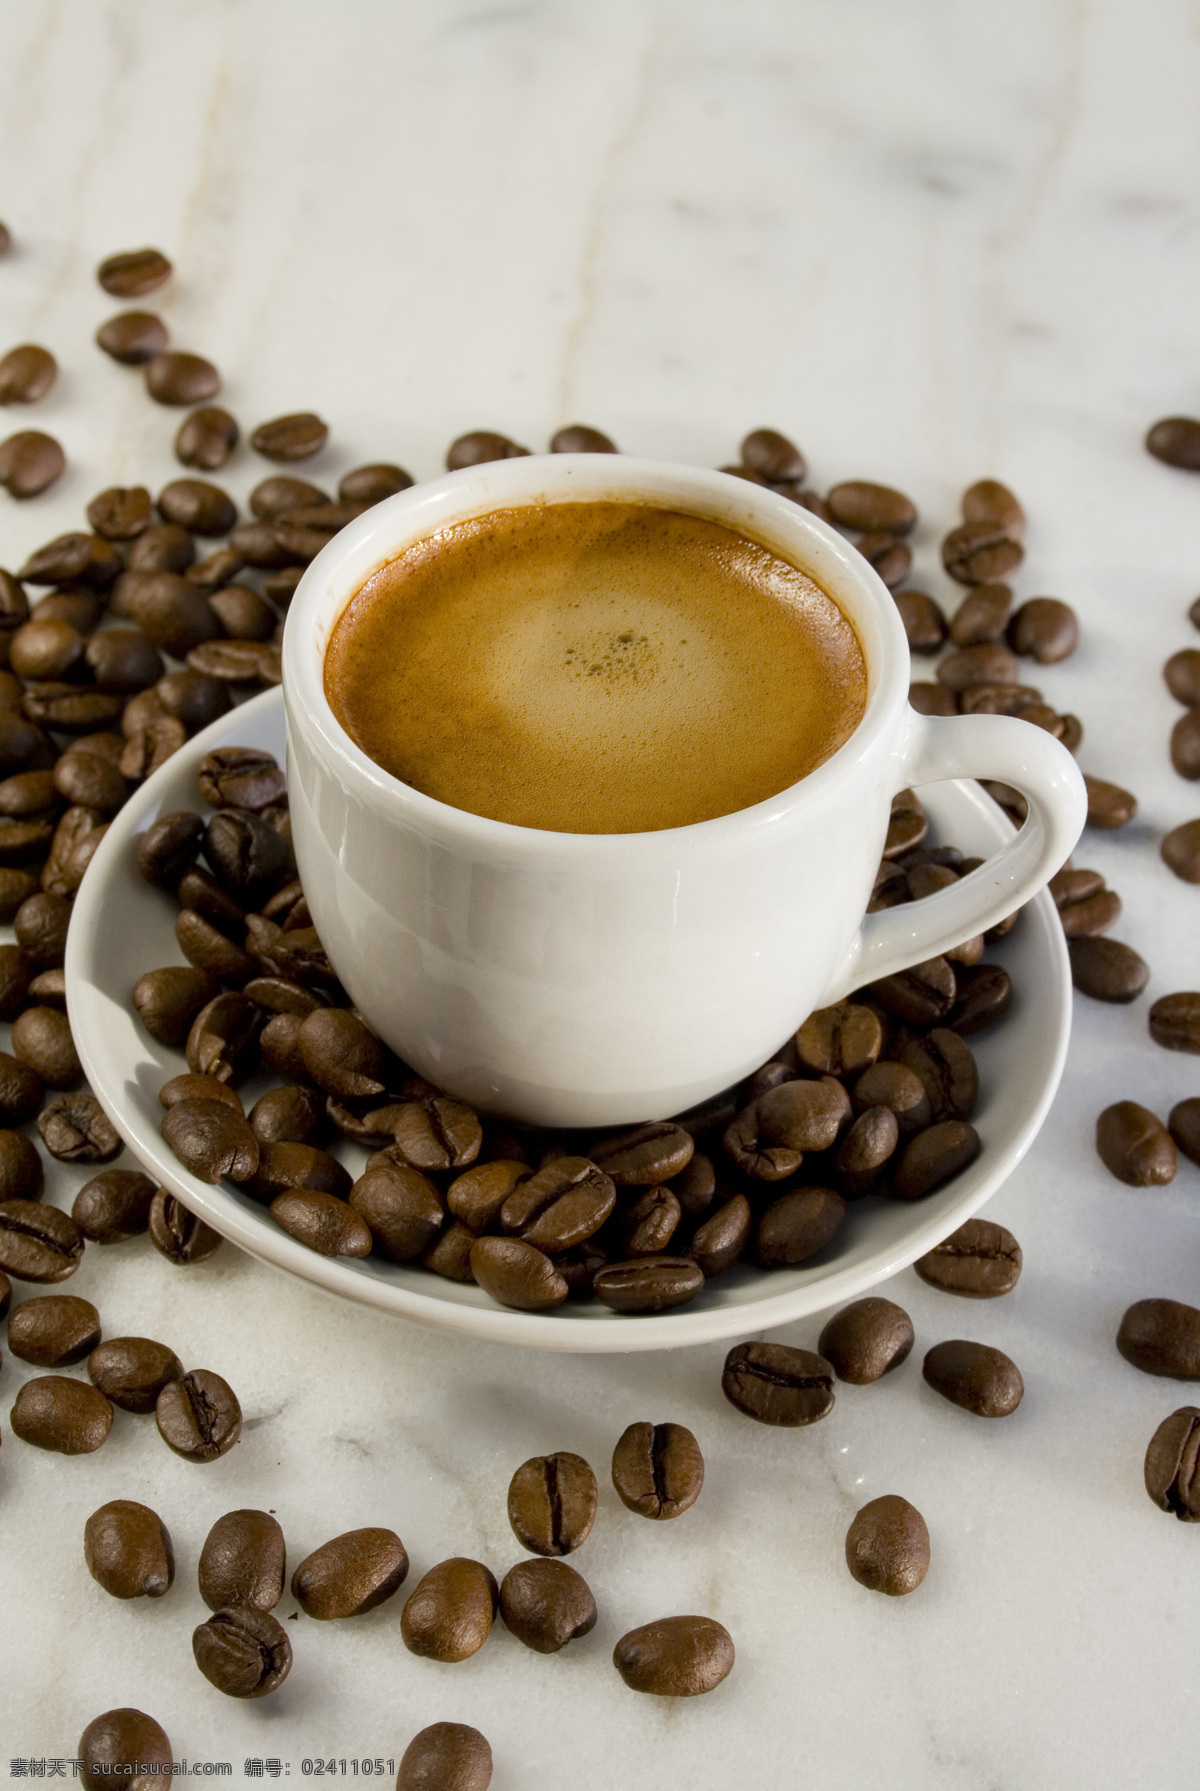 香 浓 咖啡 咖啡豆 咖啡杯 牛奶加咖啡 花式咖啡 coffee 浓缩咖啡 浪漫咖啡 意大利咖啡 饮料酒水 餐饮美食 咖啡图片